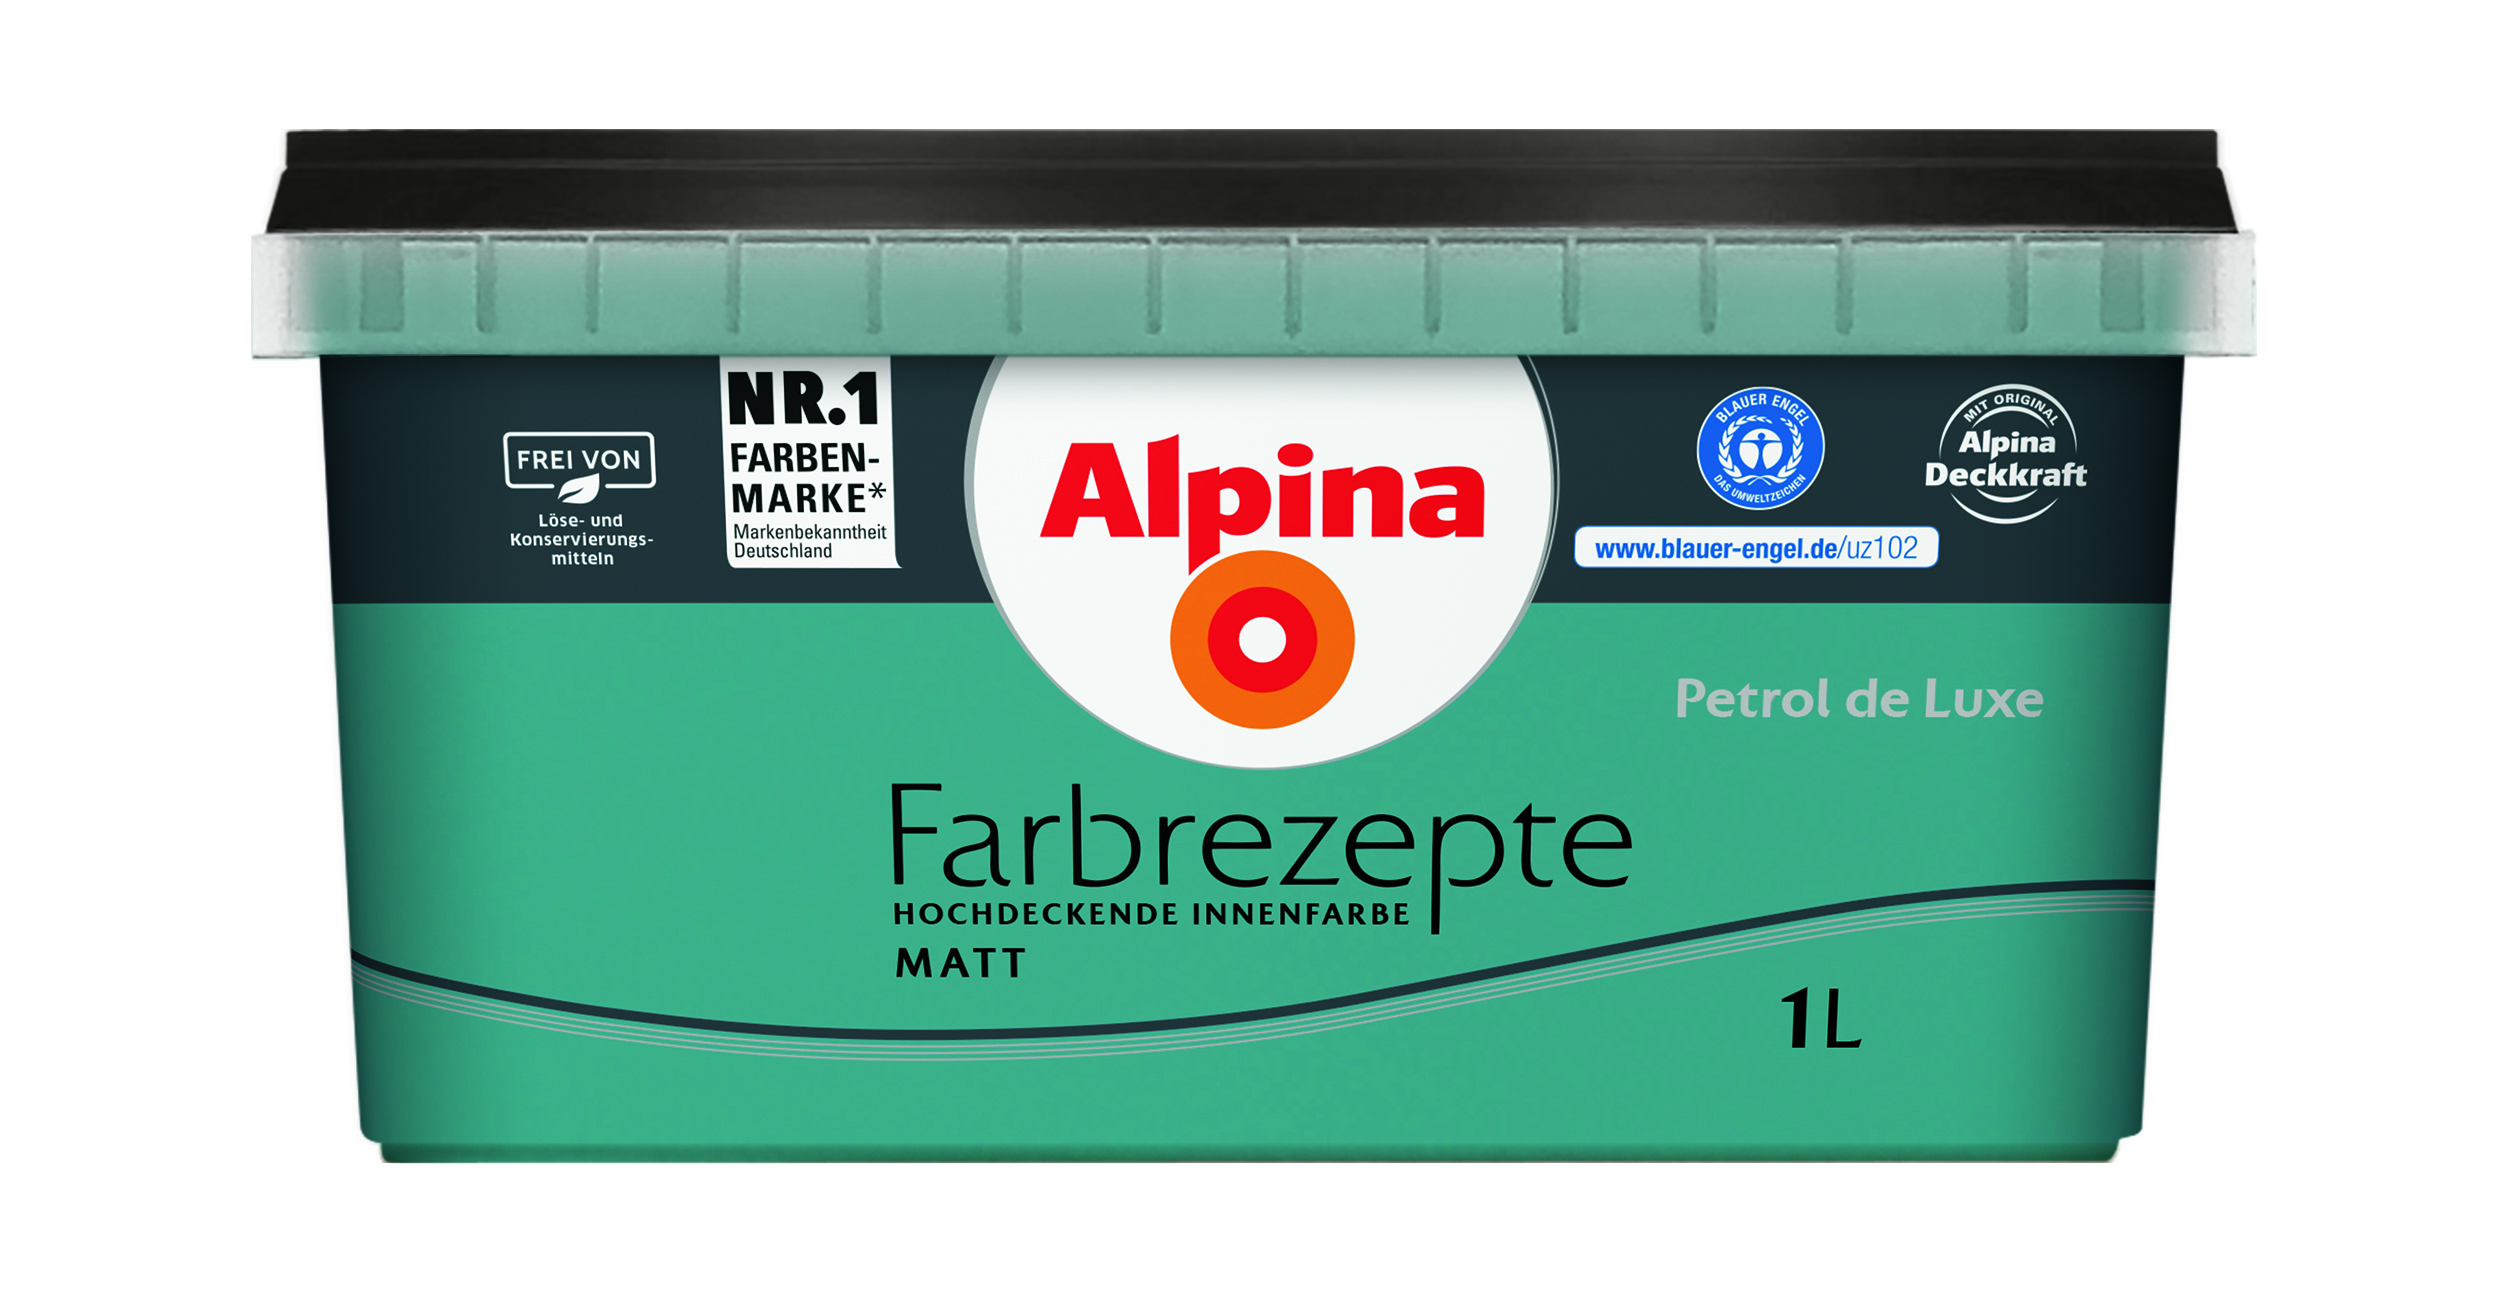 Alpina Farbrezepte Petrol de Luxe, 1L